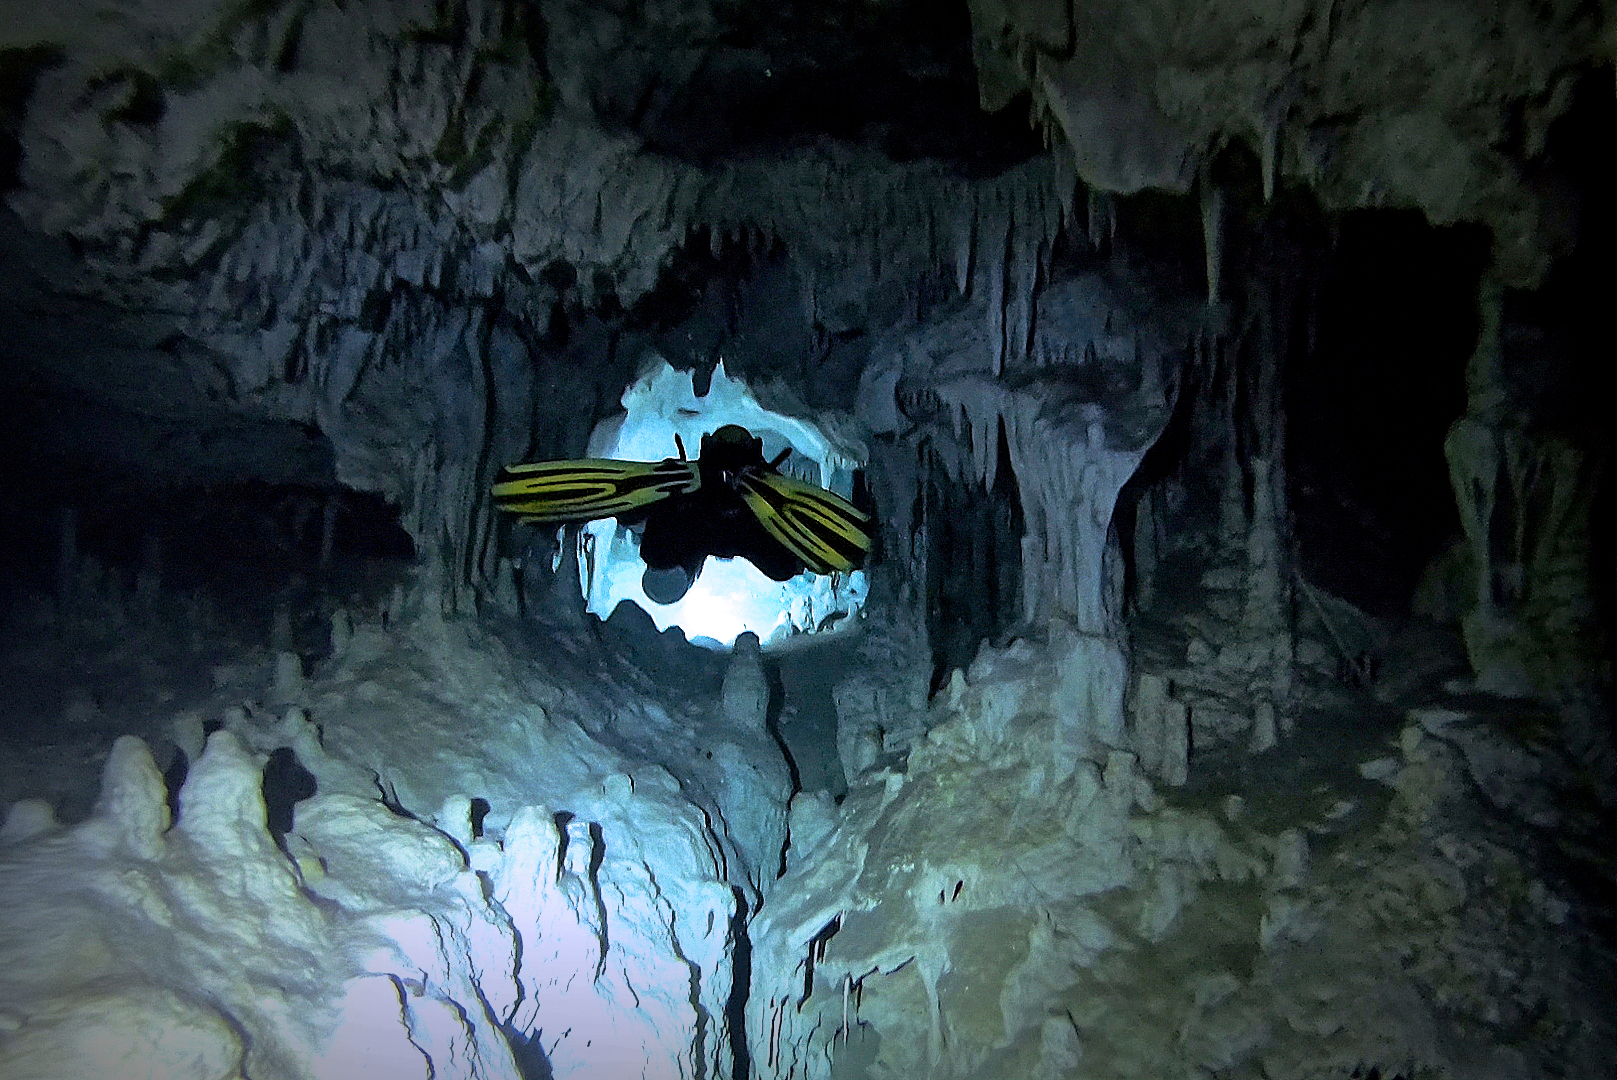 Sac Aktun cenoty meksyk nurkowanie jaskiniowe alpha-divers wyprawy wyjazdy nurkowe kursy nurkowania w meksyku